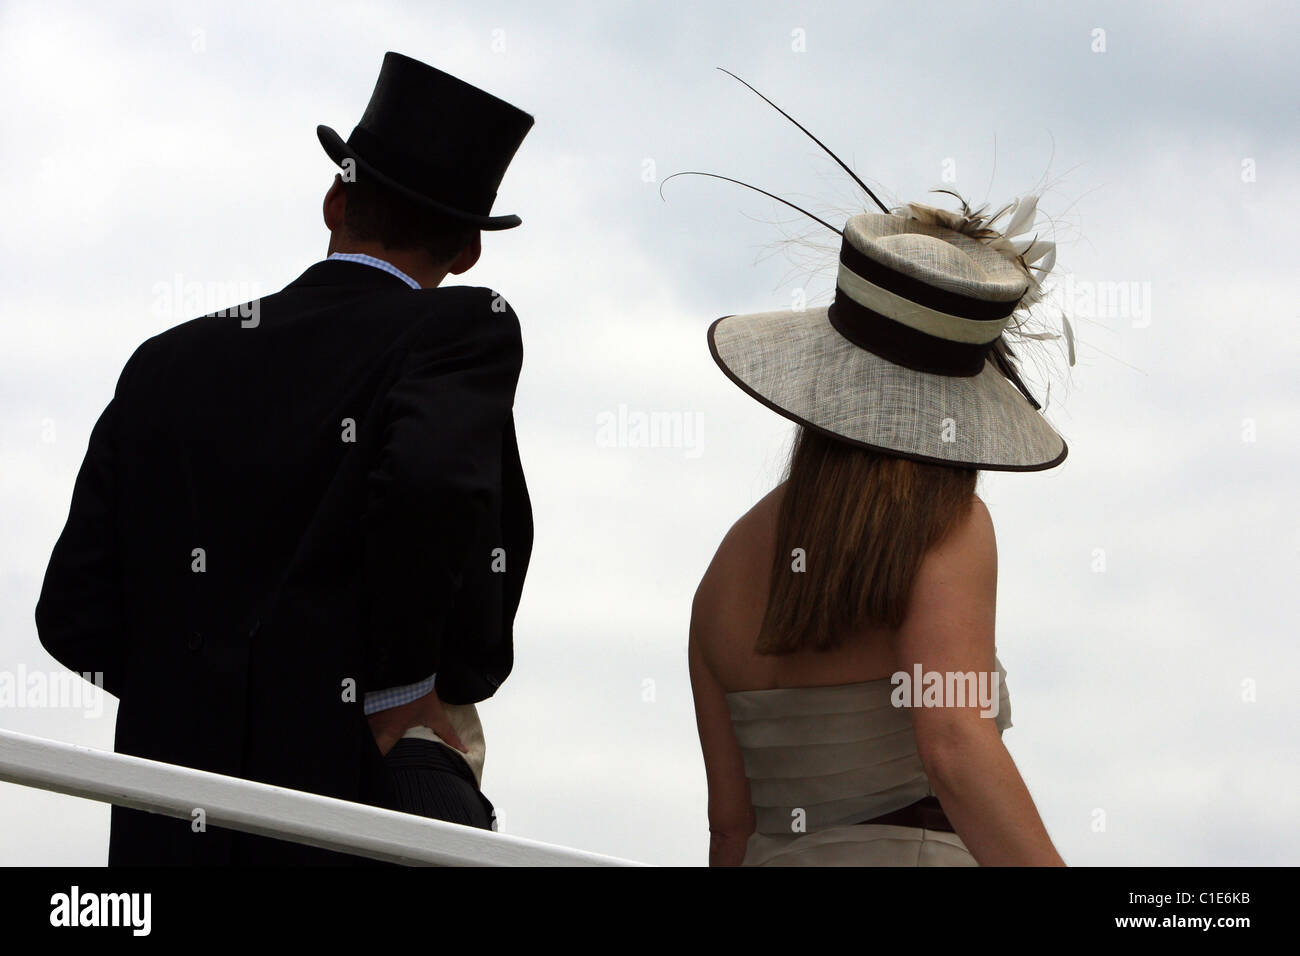 L'homme en haut de forme et woman in hat, Epsom, Royaume-Uni Banque D'Images